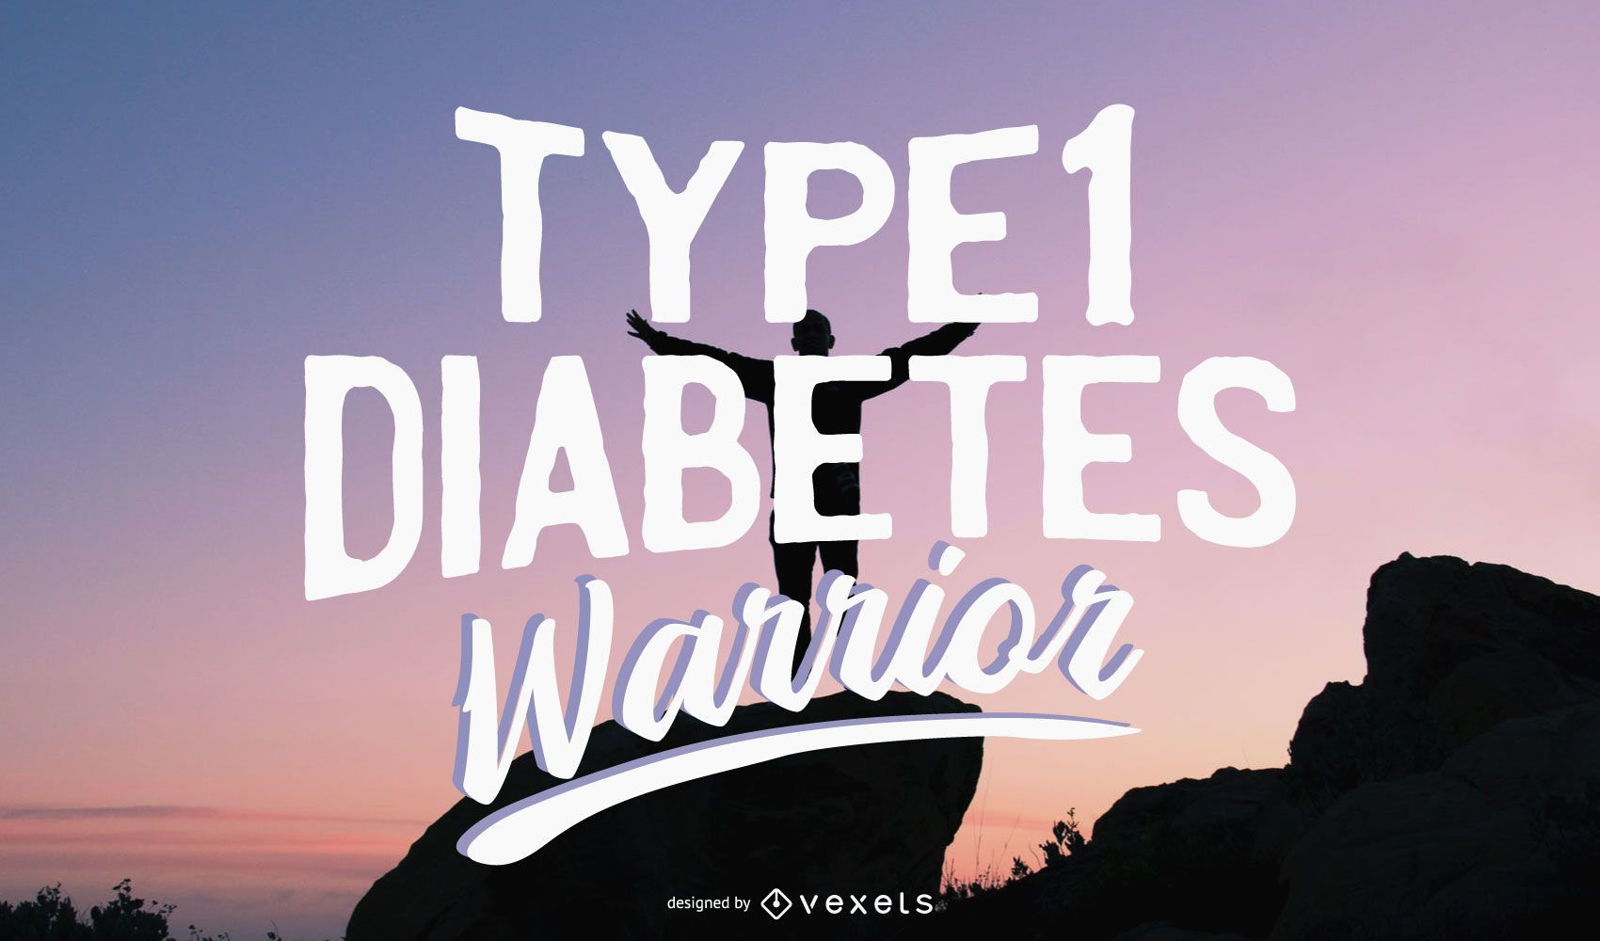 Ilustraci?n del guerrero de la diabetes tipo 1